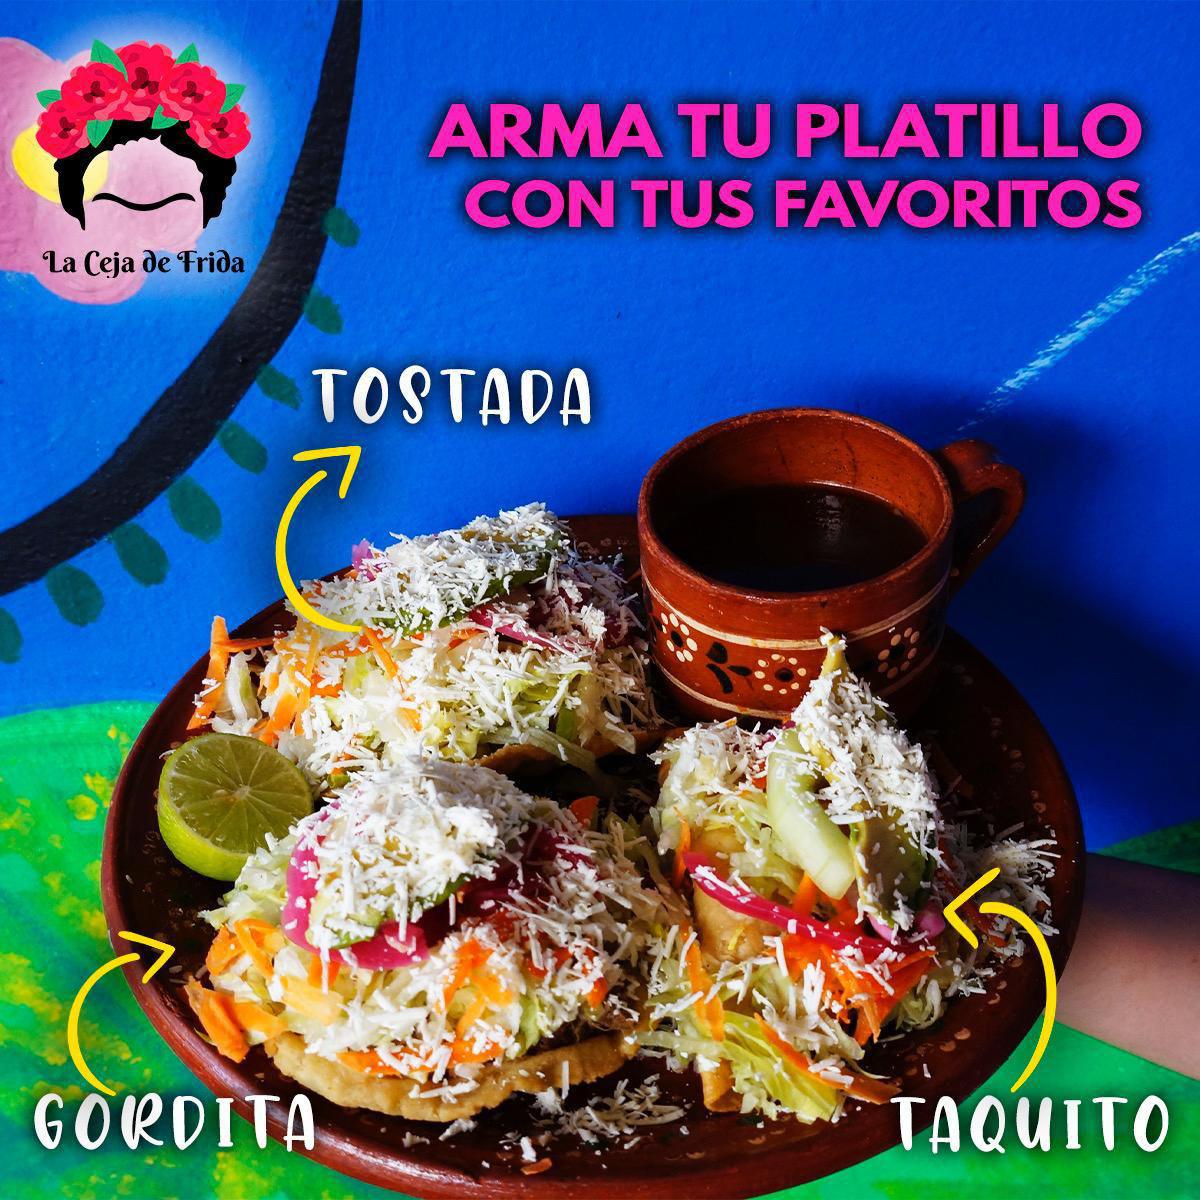 La Ceja de Frida Restaurant - Culiacán